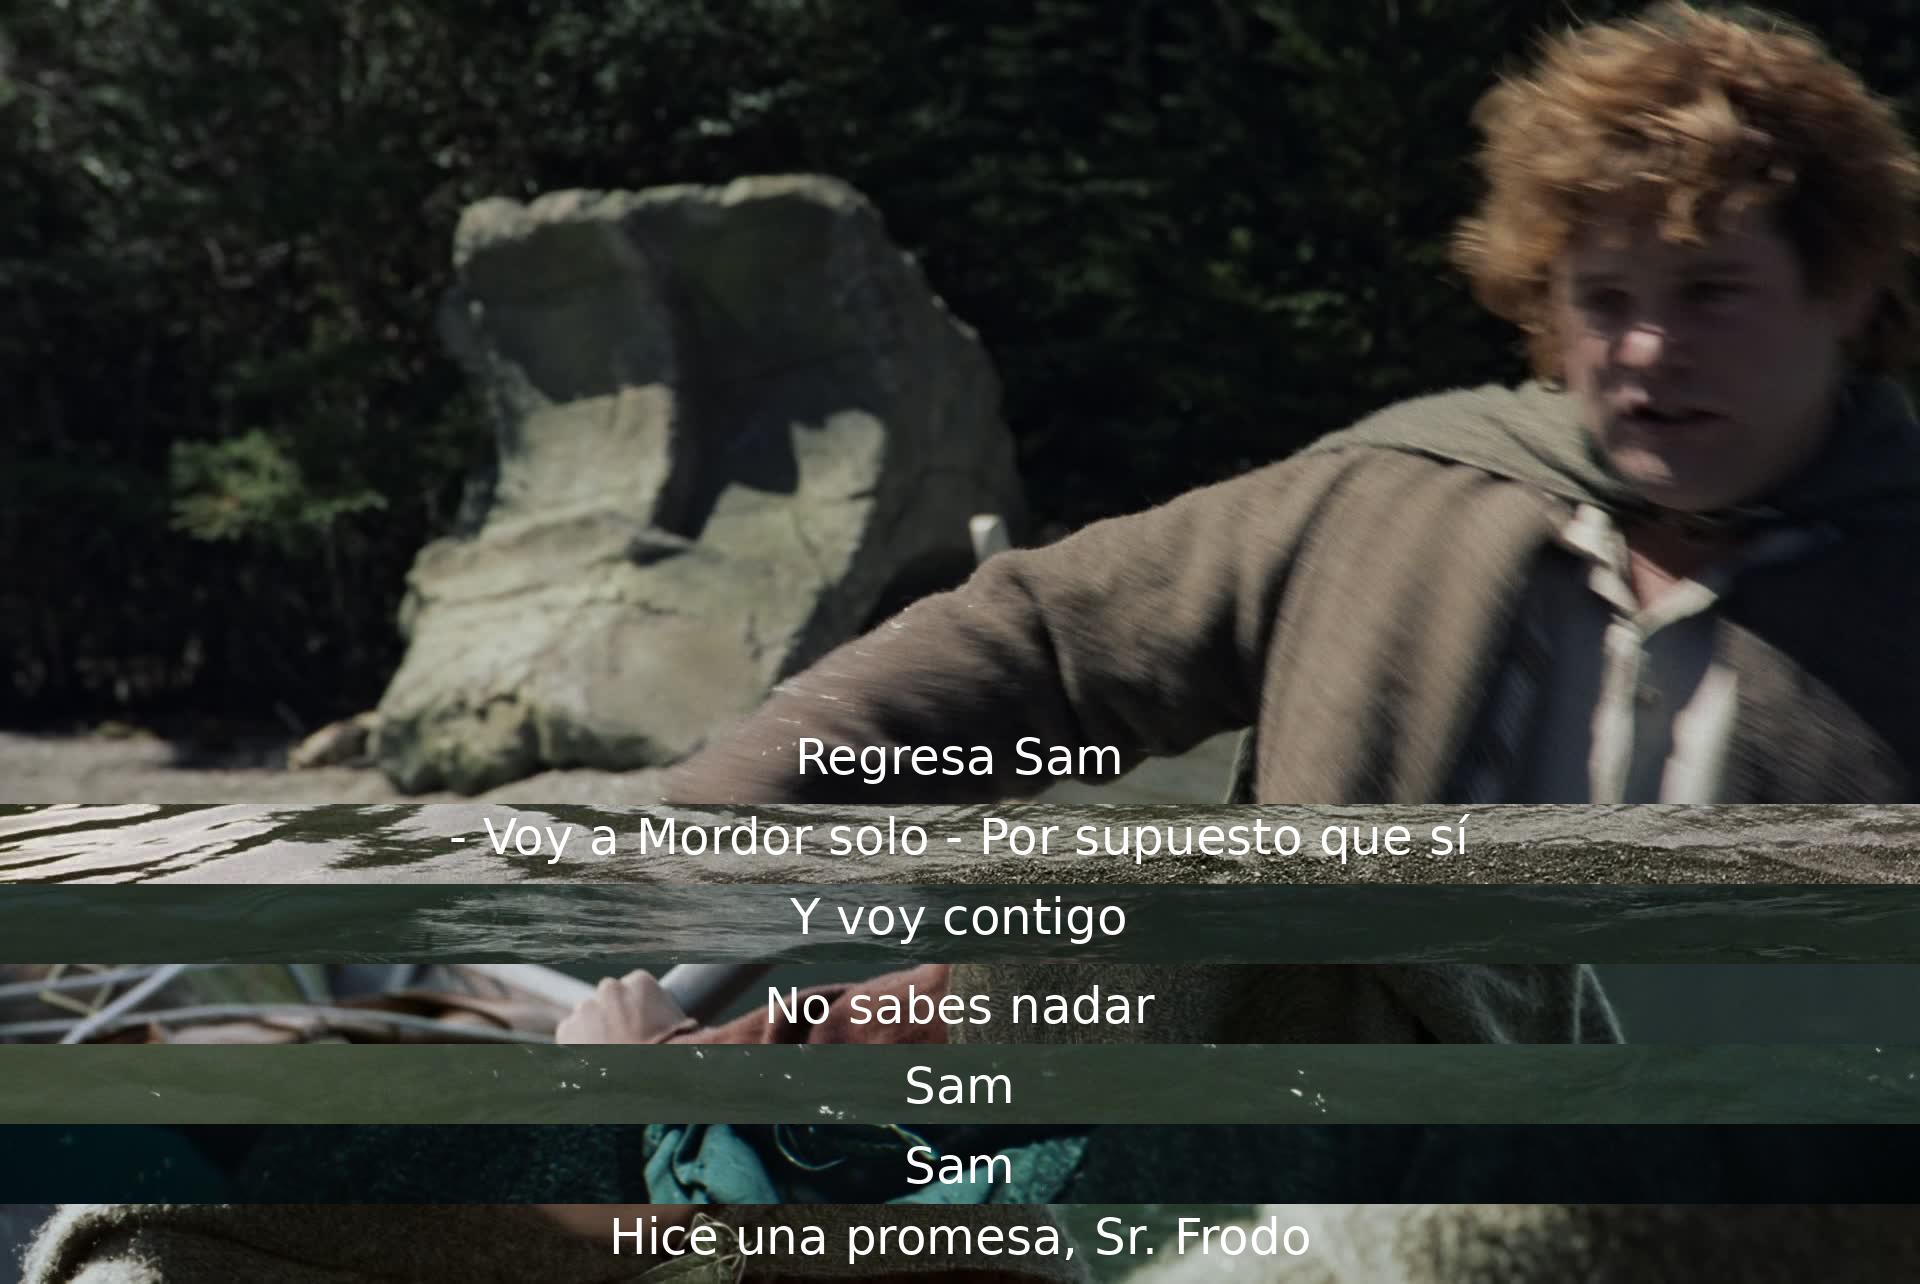 Sam regresa y Frodo dice que va a Mordor solo, pero Sam insiste en acompañarlo a pesar de sus limitaciones. Frodo recuerda una promesa hecha a Sam.